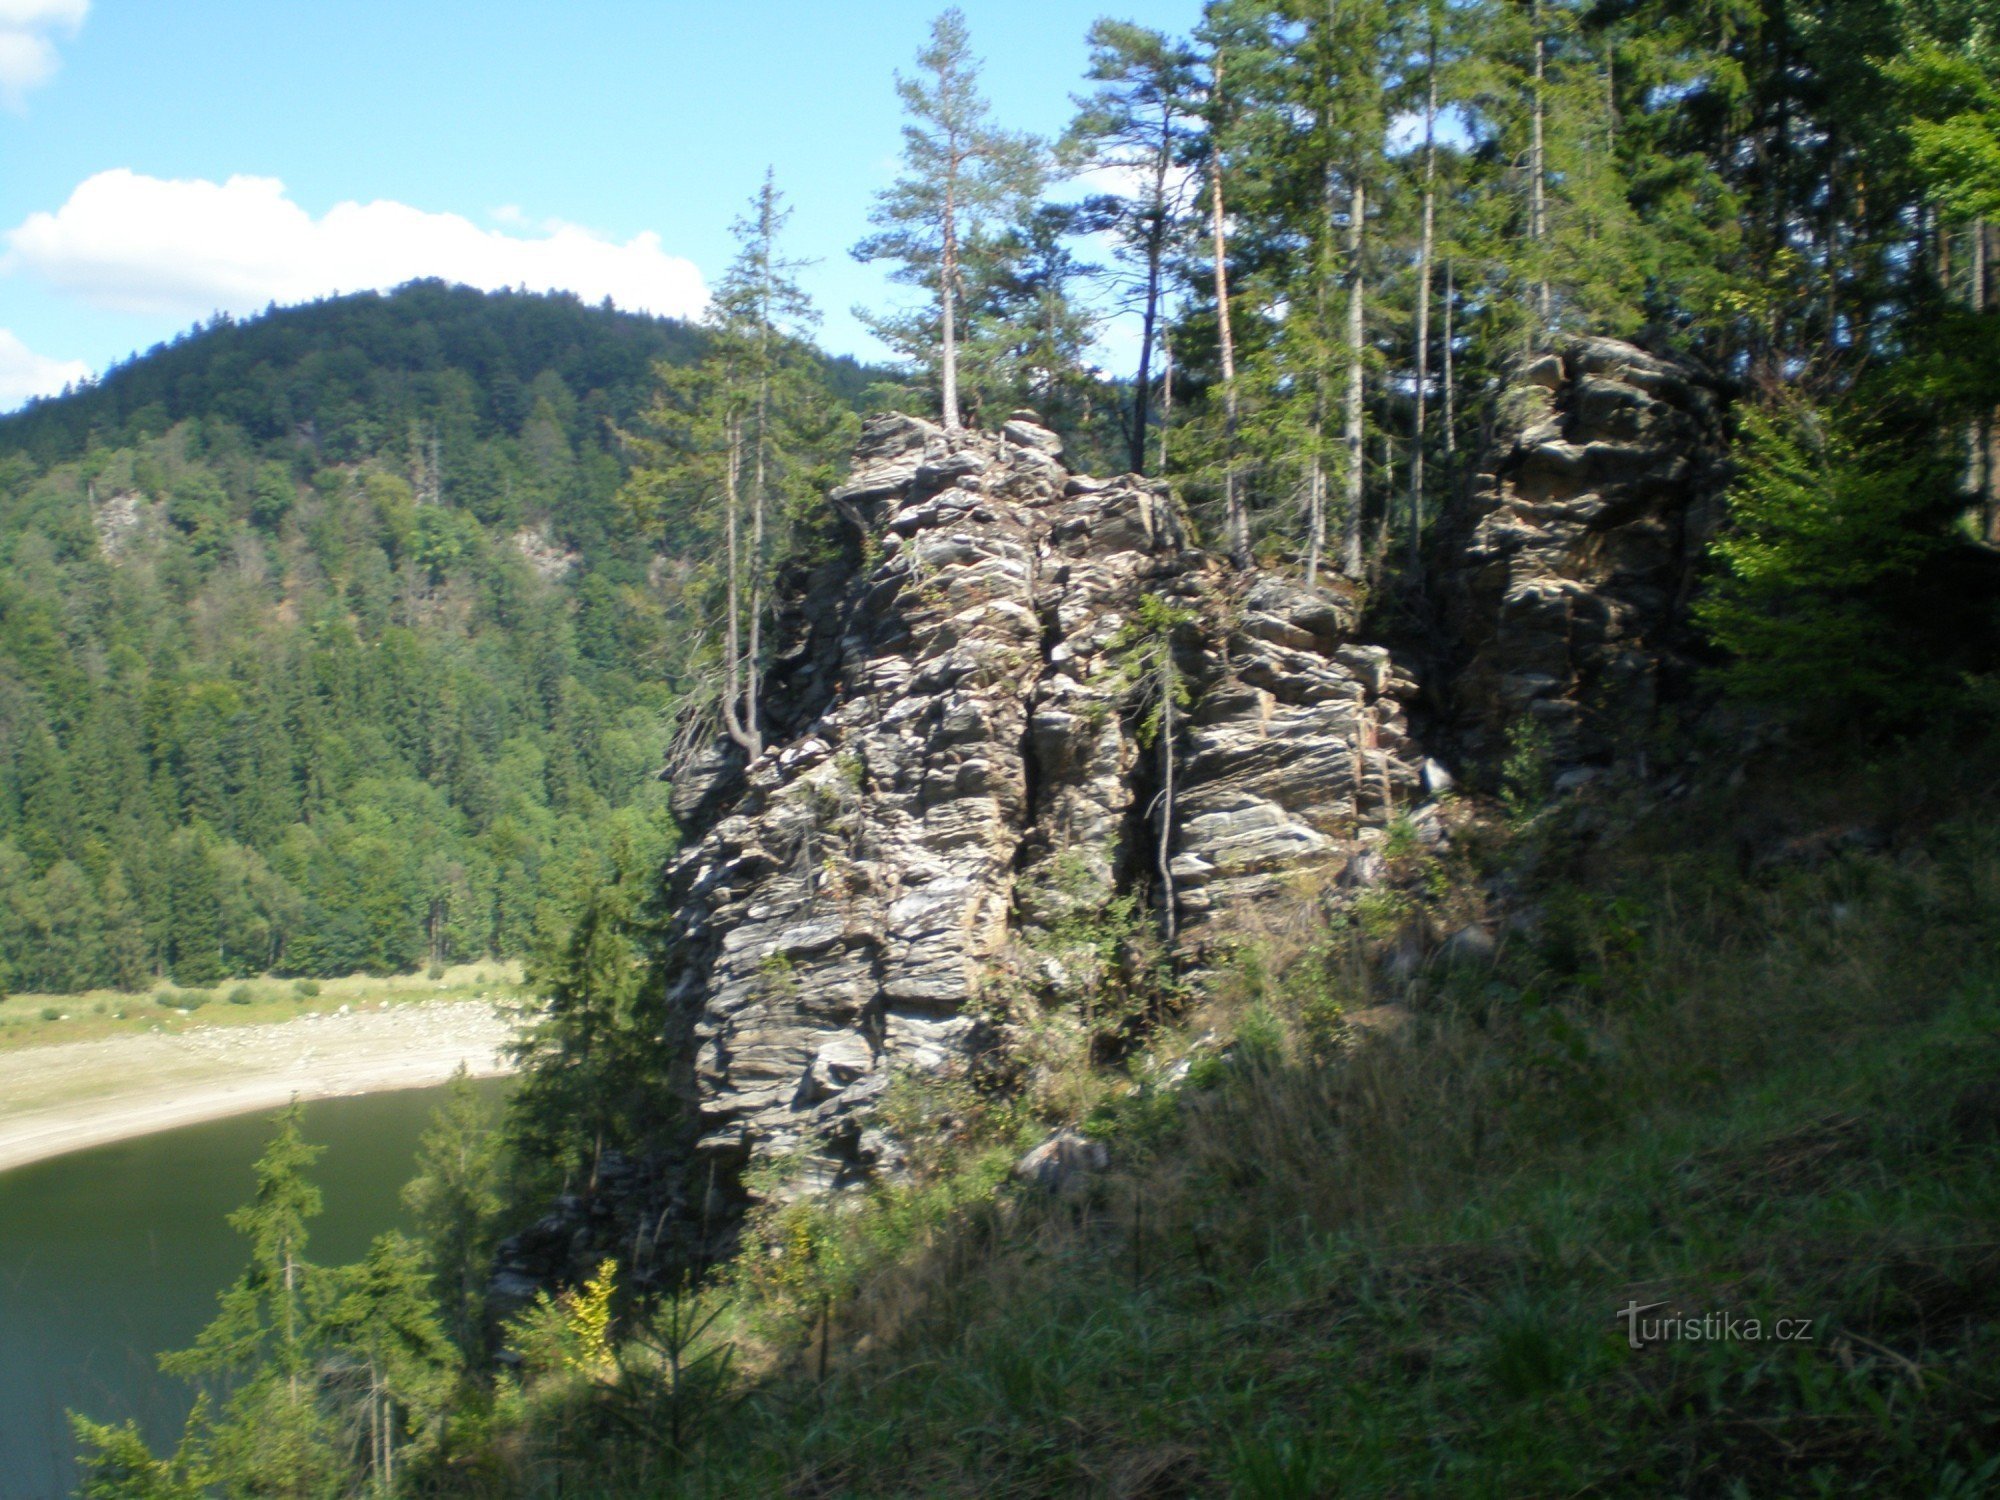 rocks above Svratka